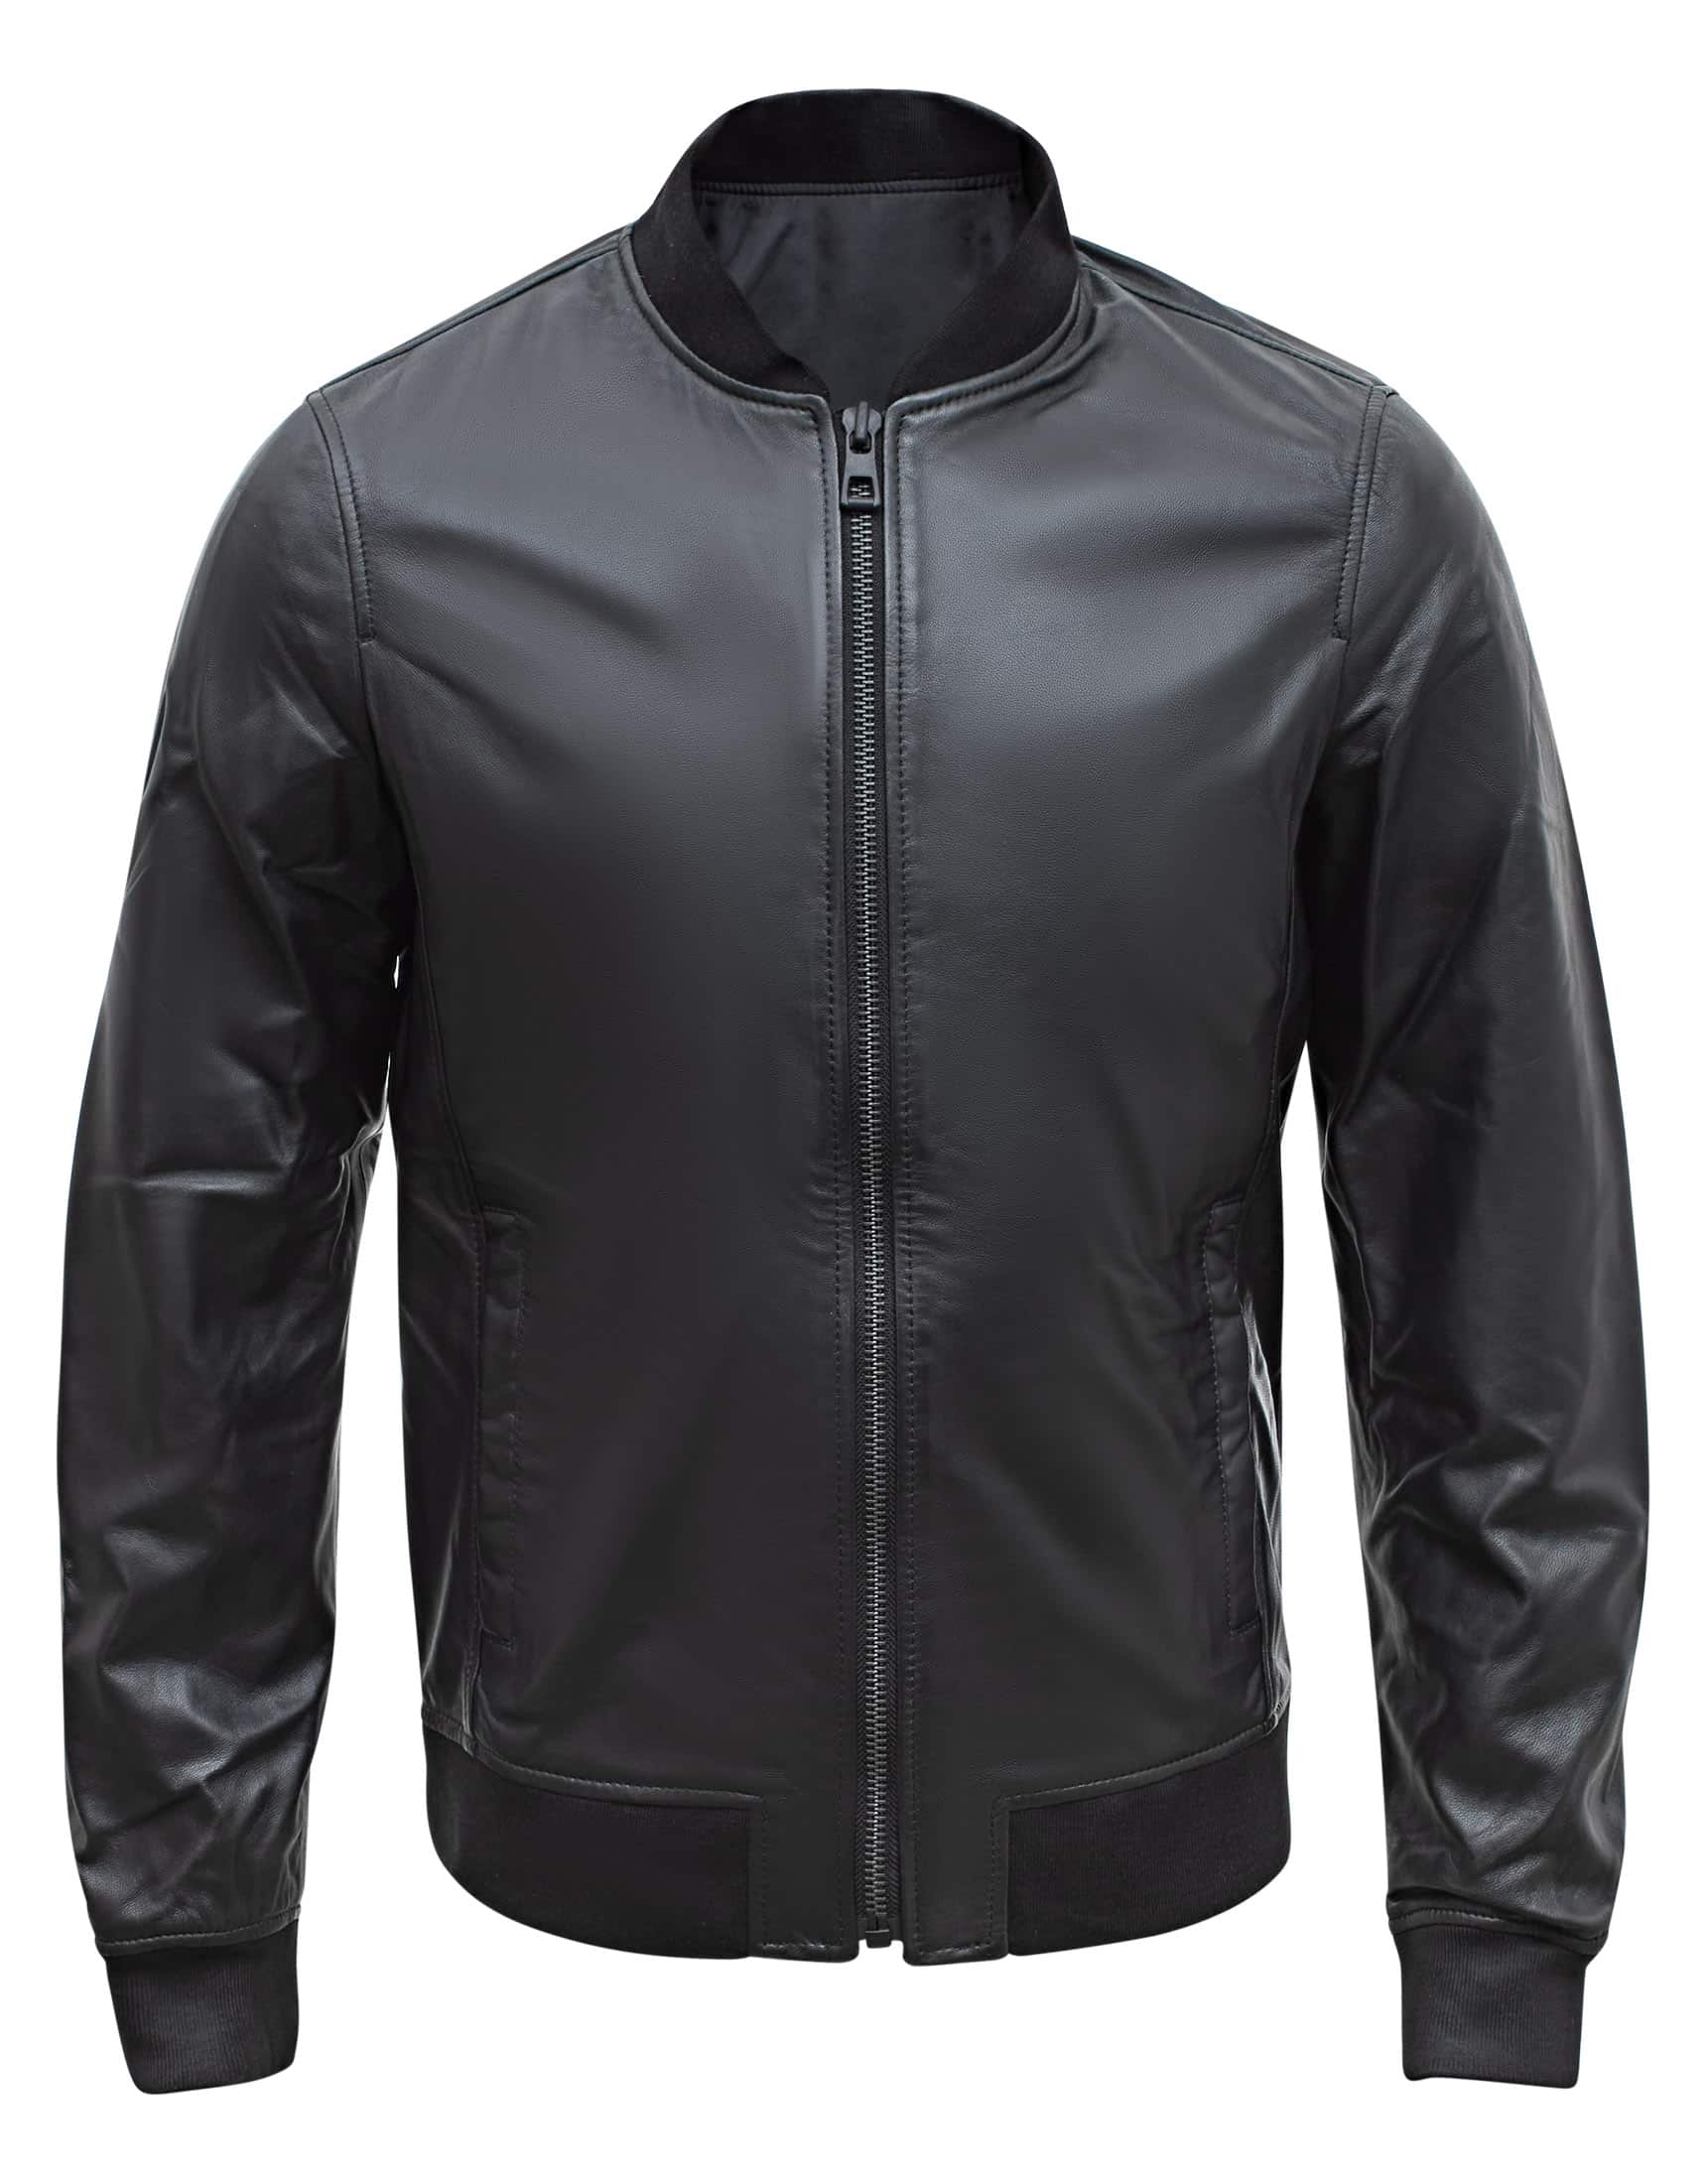 Black Leather Bomber Jacket | Men's Bomber Leather Jacket